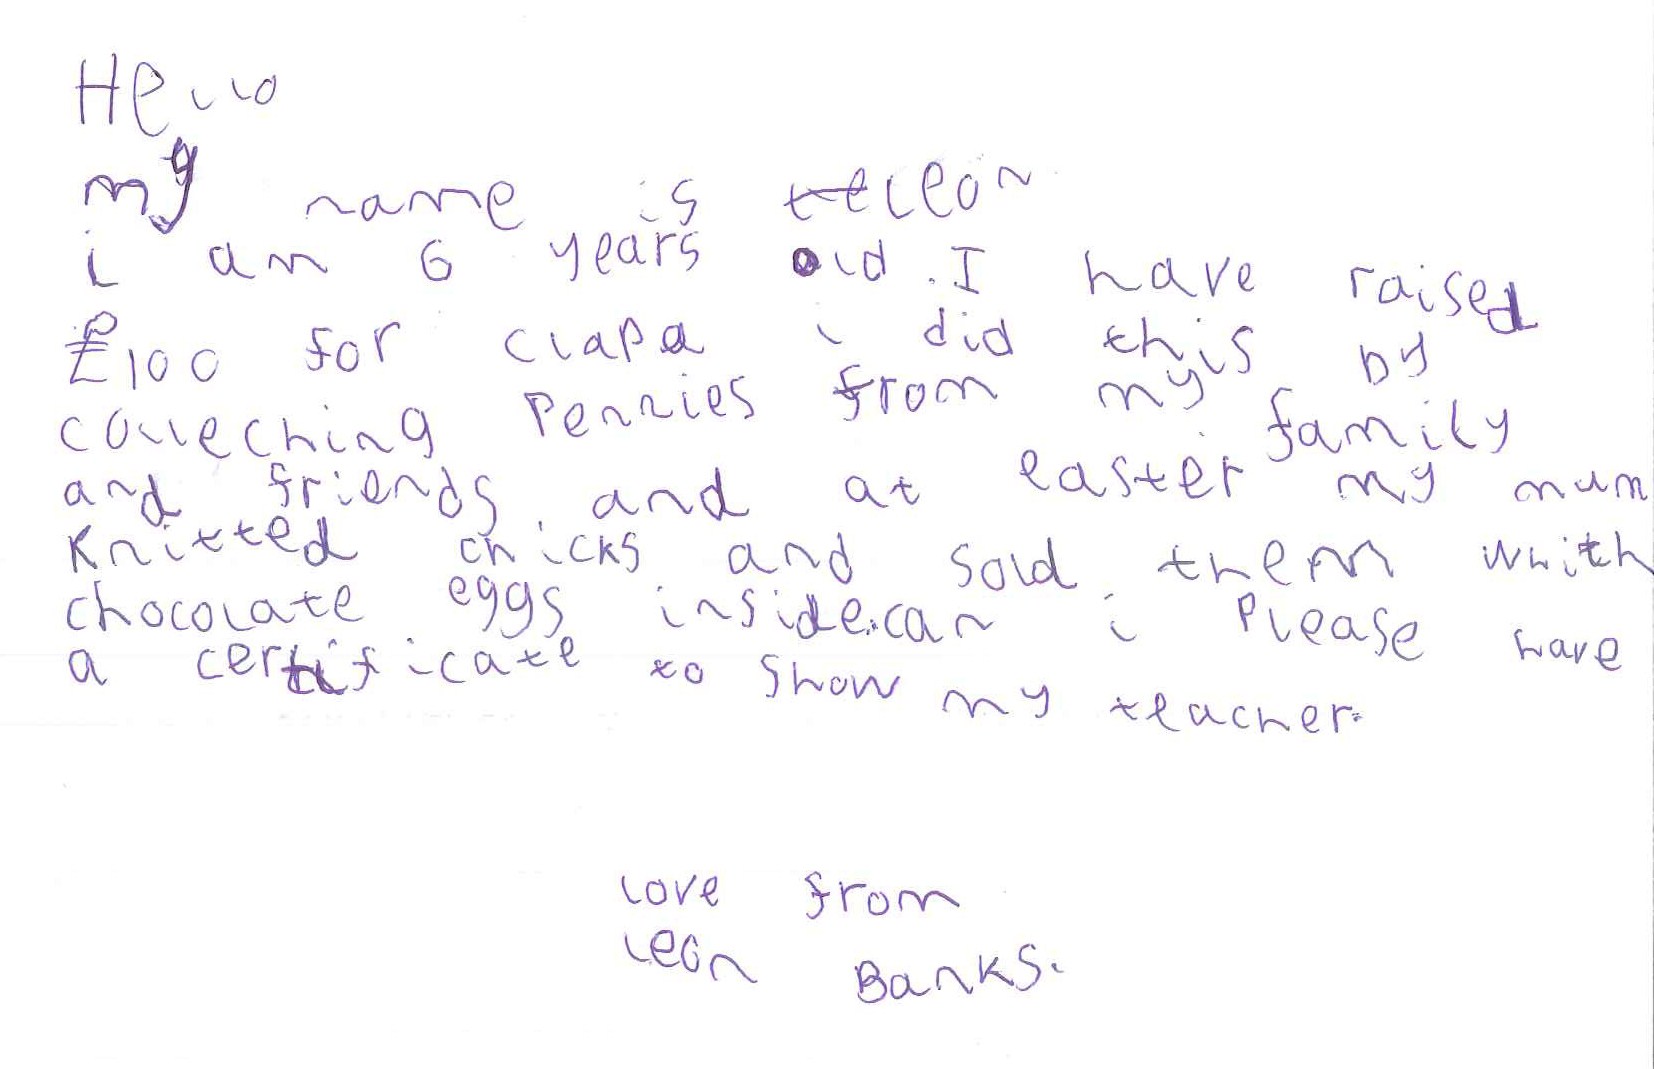 Leon Banks - Letter